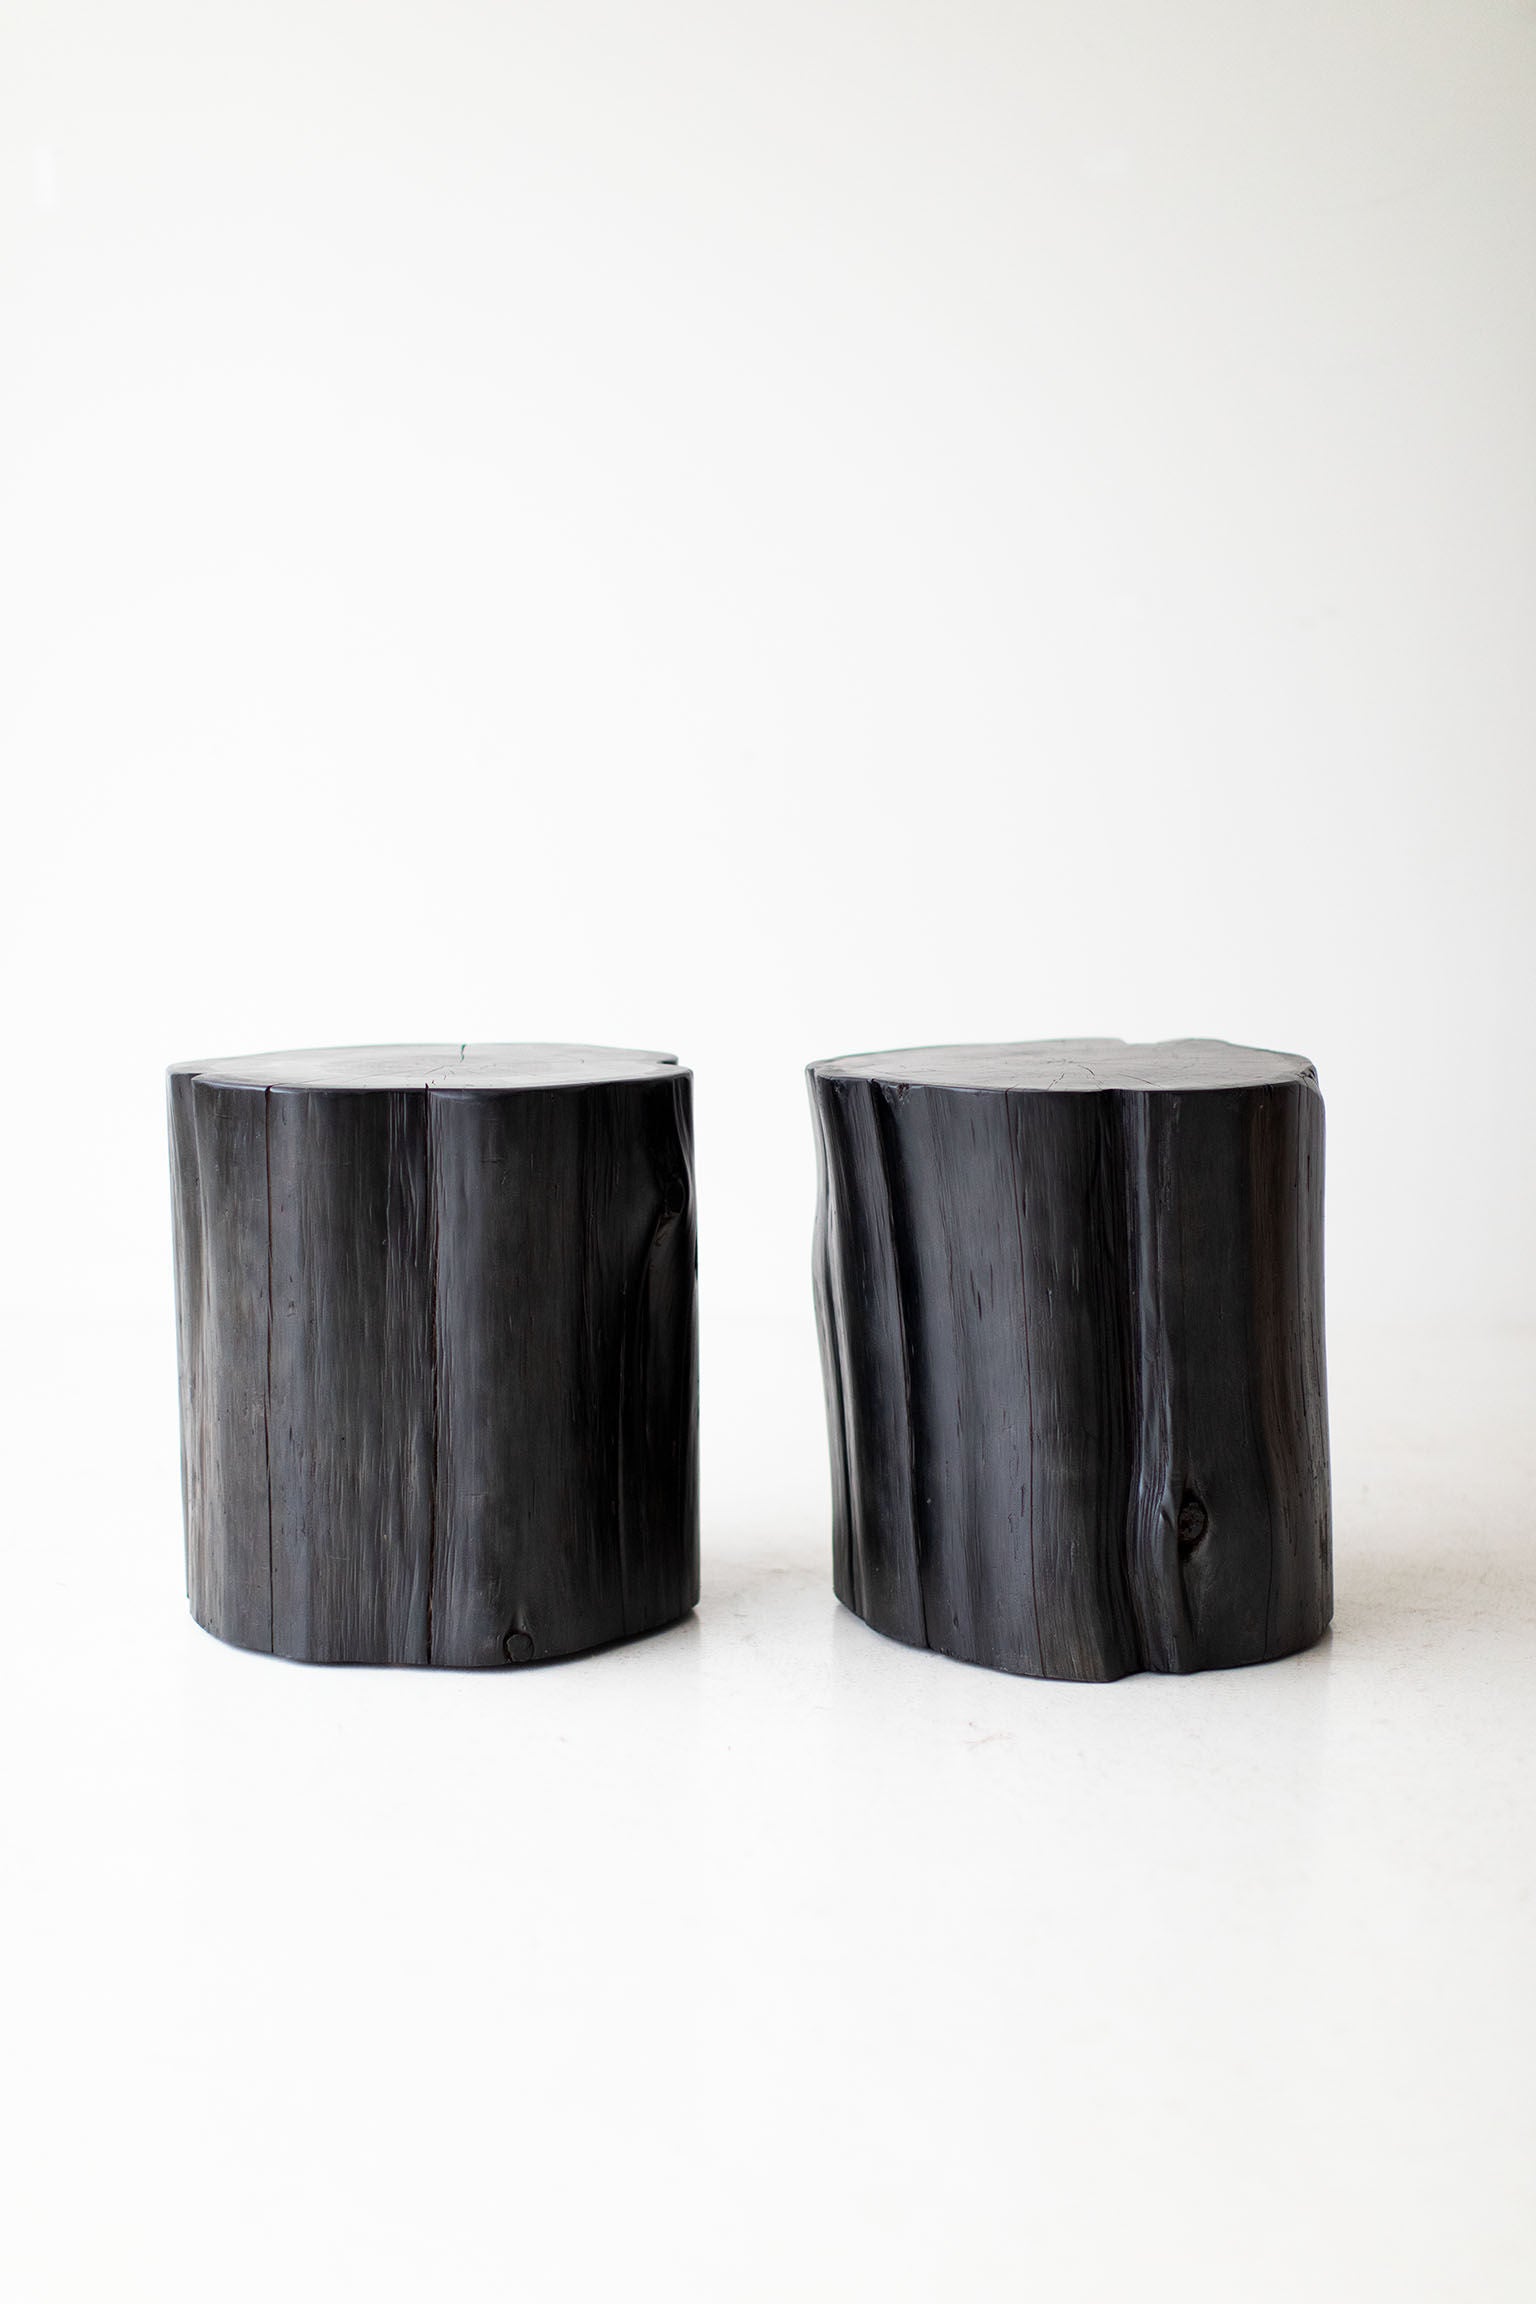 Large Tree Stump Side Tables - 1219 - Black